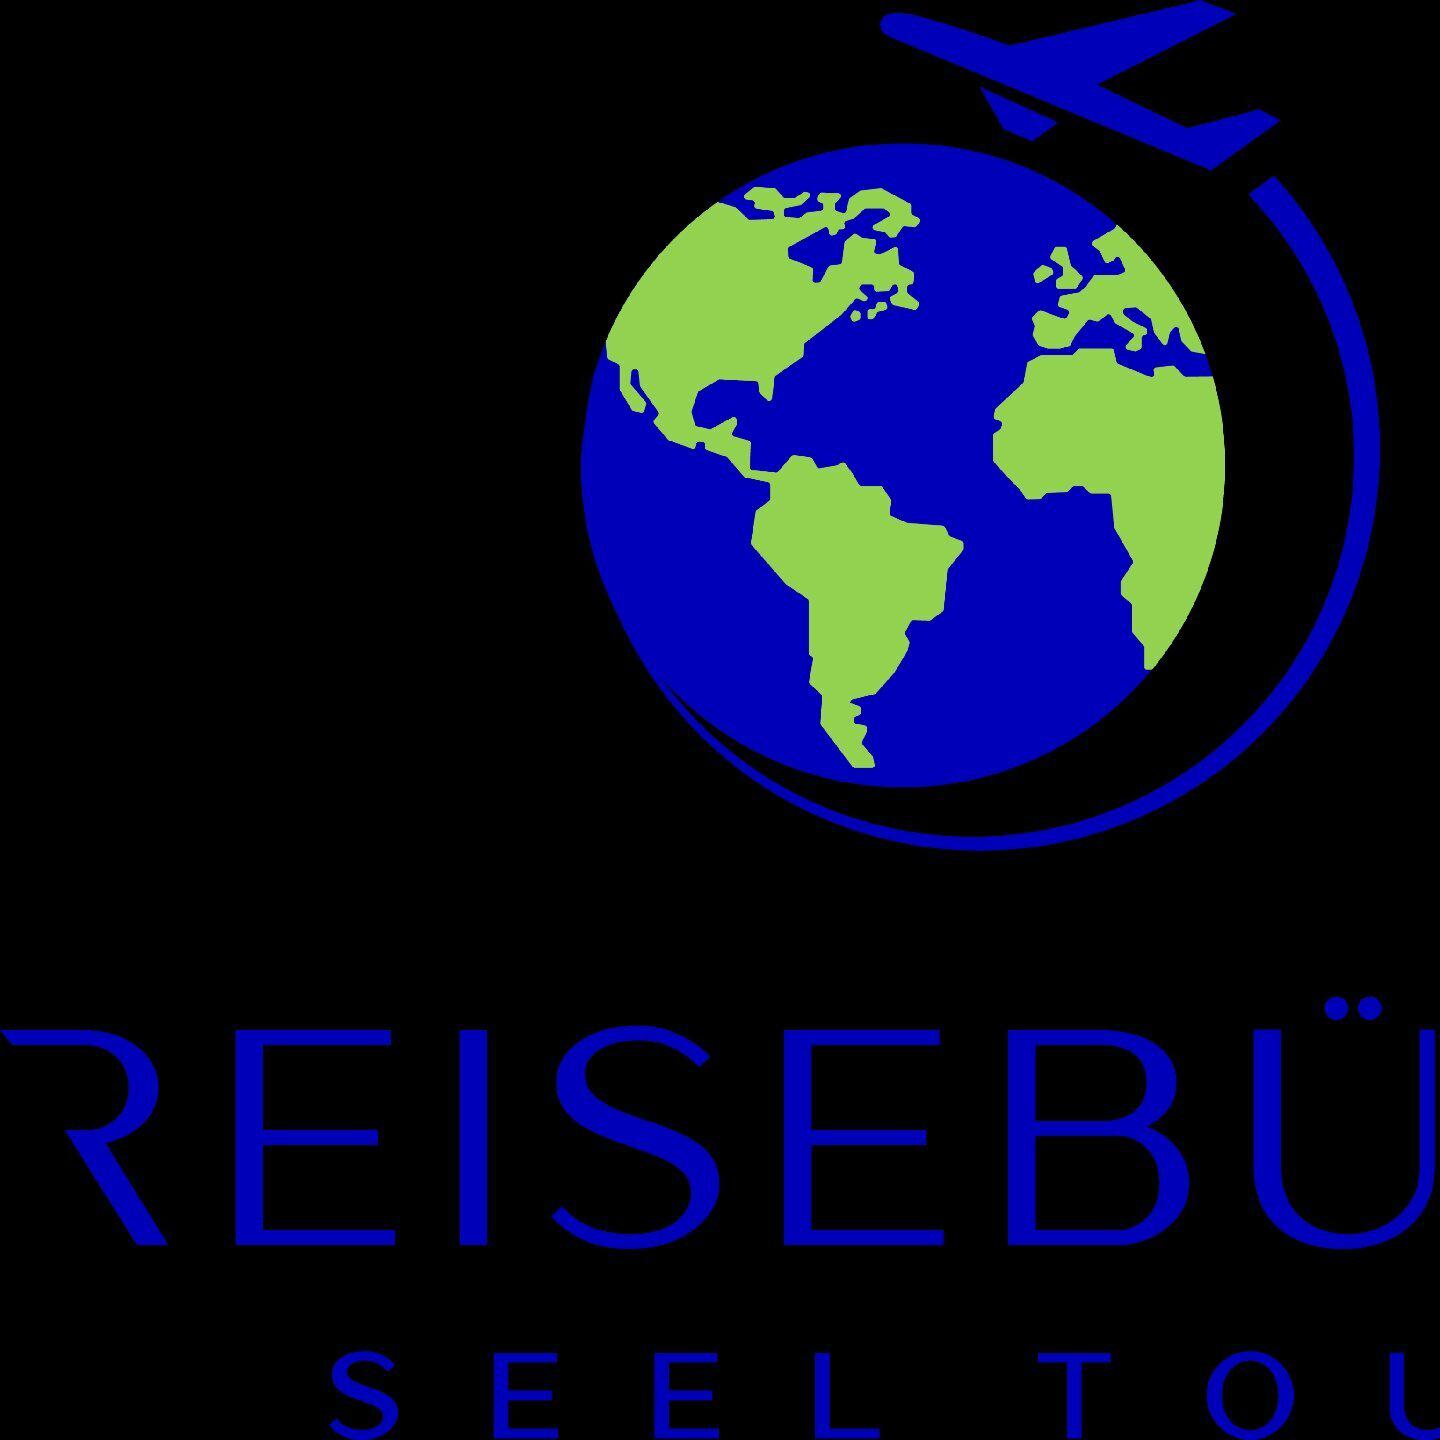 Bilder Reisebüro Seel Tour - Pauschalreisen Flugtickets Visum